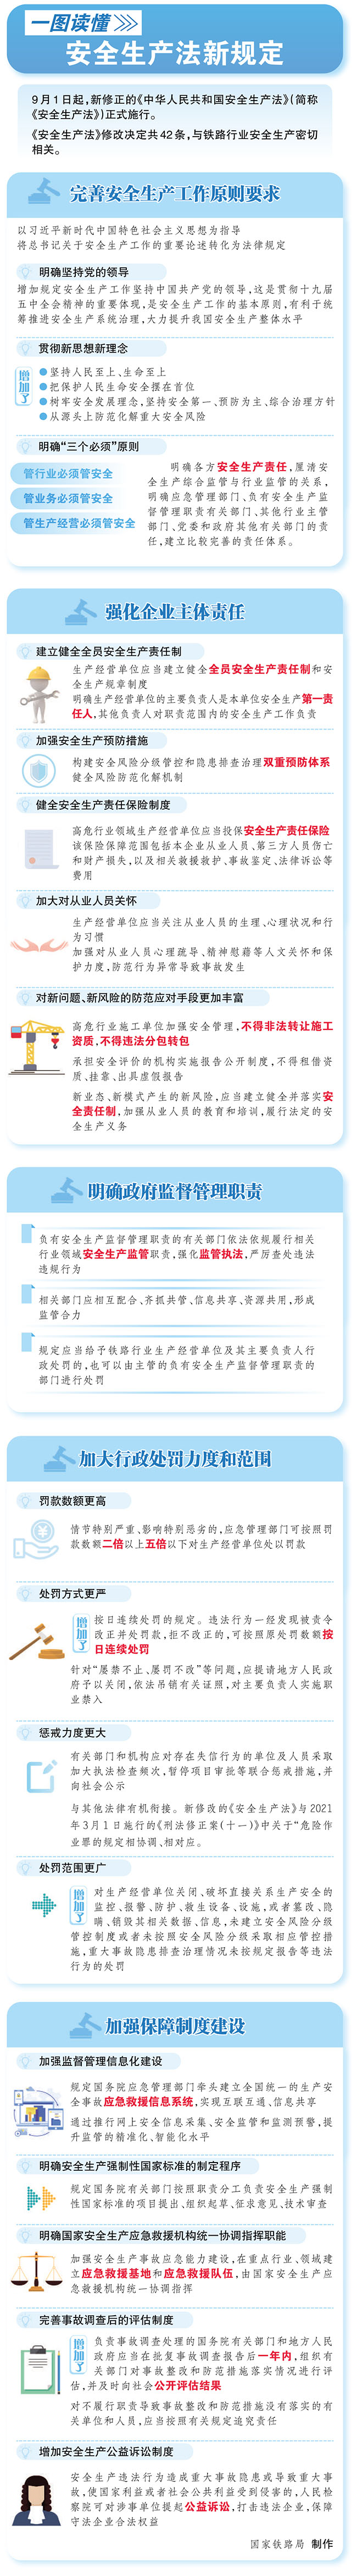 一图读懂中华人民共和国安全生产法.jpg